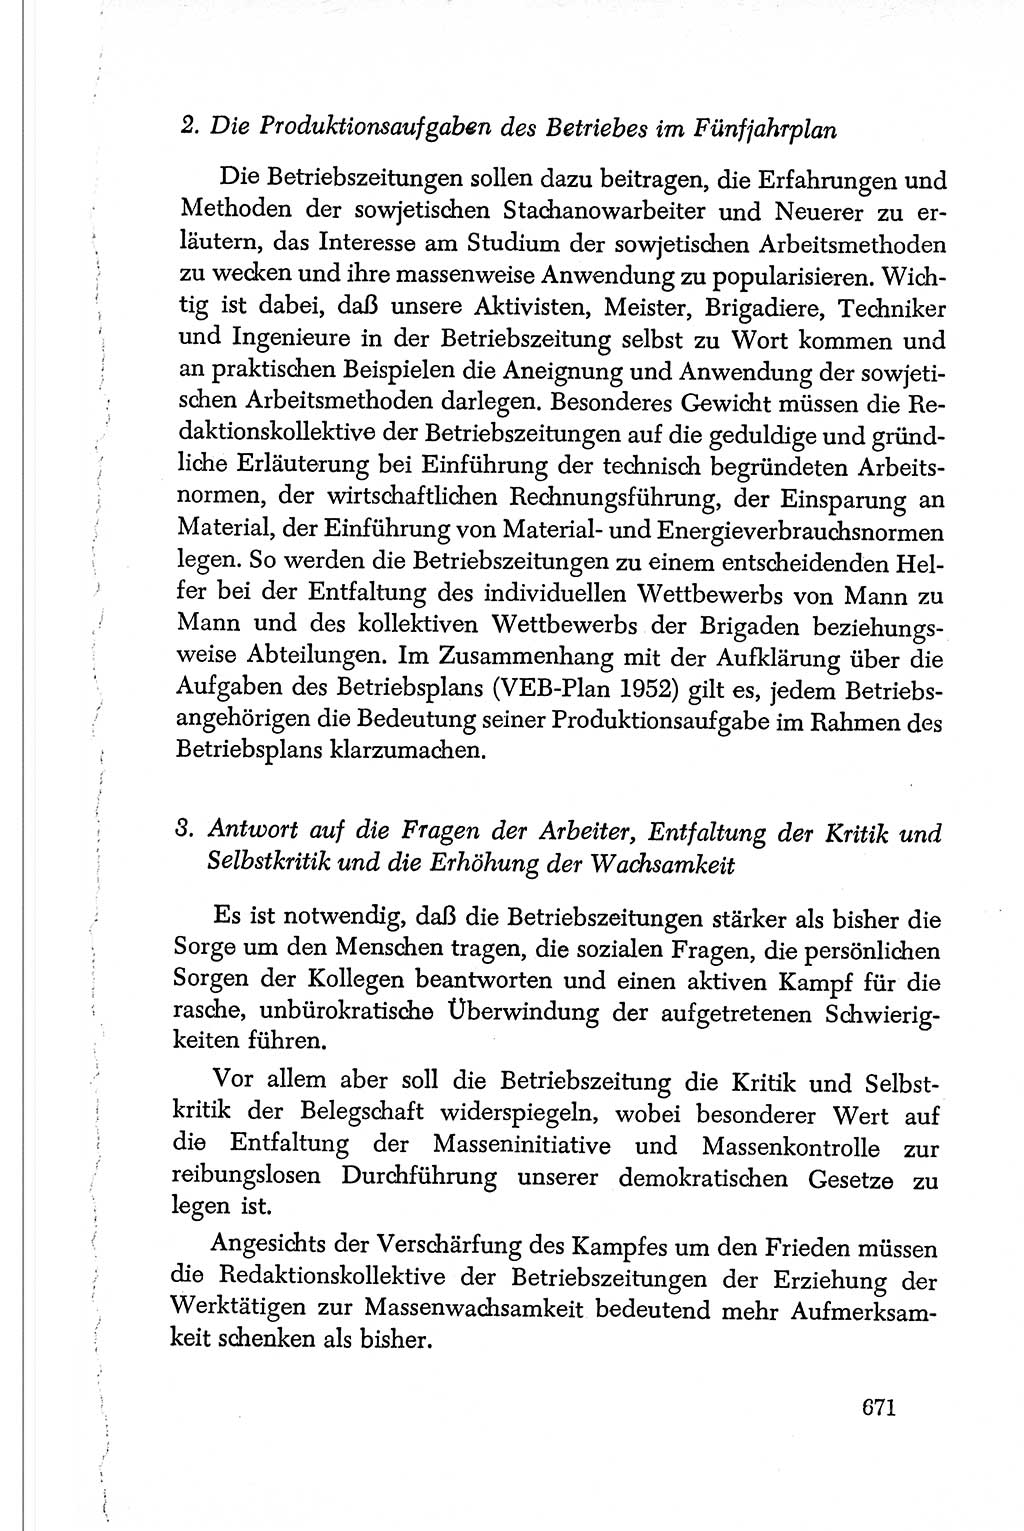 Dokumente der Sozialistischen Einheitspartei Deutschlands (SED) [Deutsche Demokratische Republik (DDR)] 1950-1952, Seite 671 (Dok. SED DDR 1950-1952, S. 671)